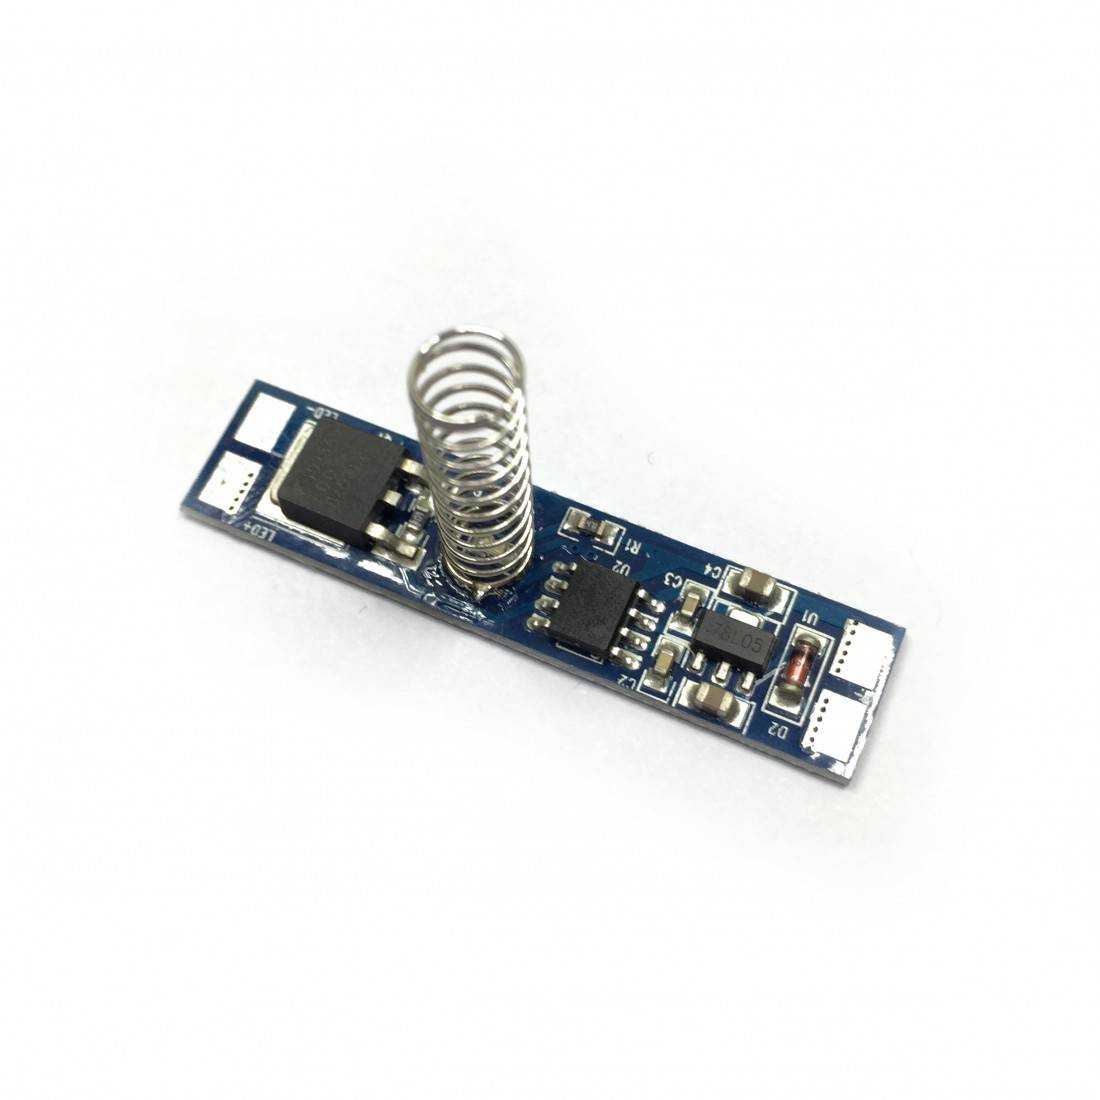 Mini variateur tactile pour ruban LED 12/24V en profil